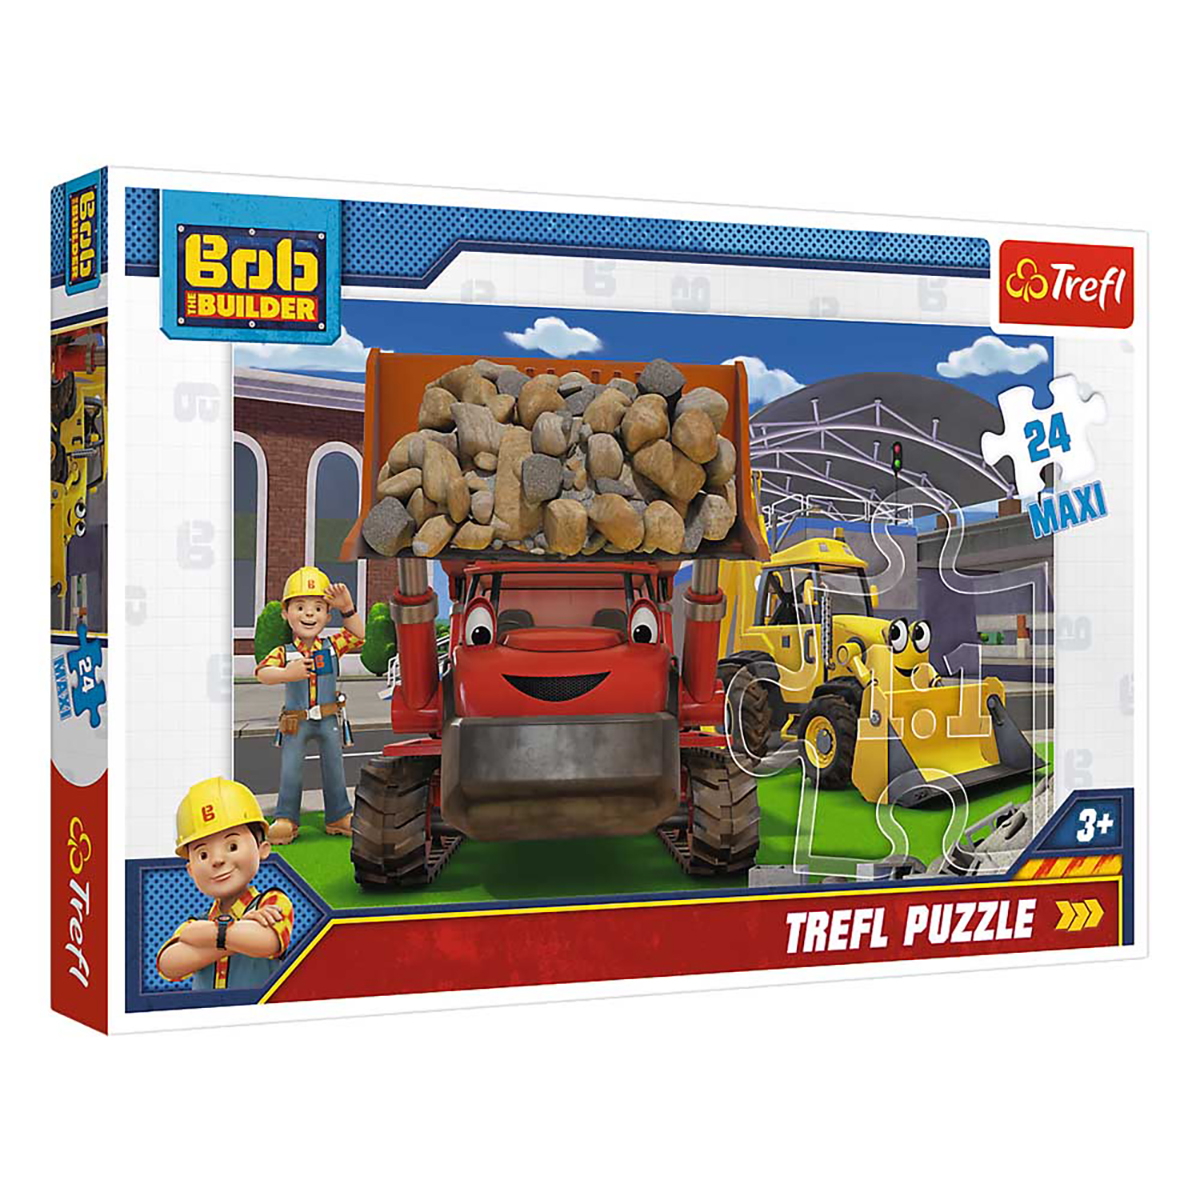 TREFL Bob - schaffen das Wir Puzzle